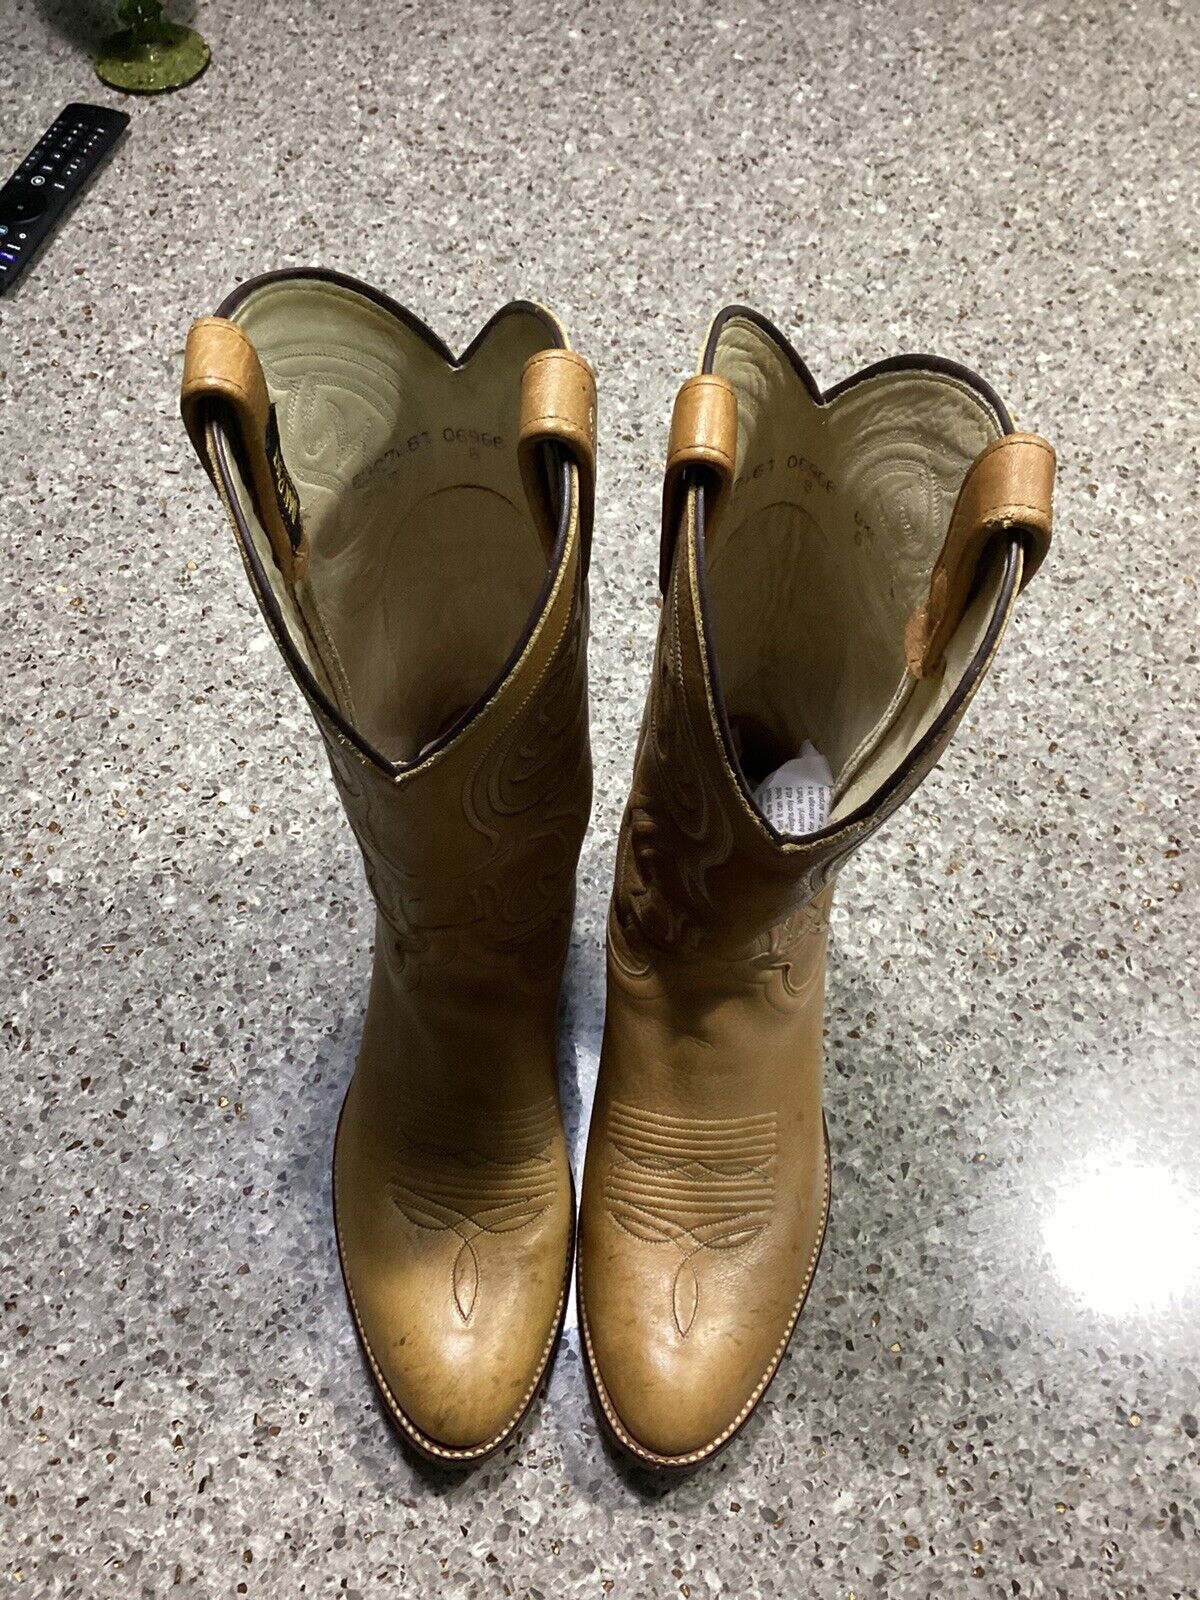 Dan Post Palomino Color Leather Men’s Cowboy Boots Size 8.5 D. Excellent